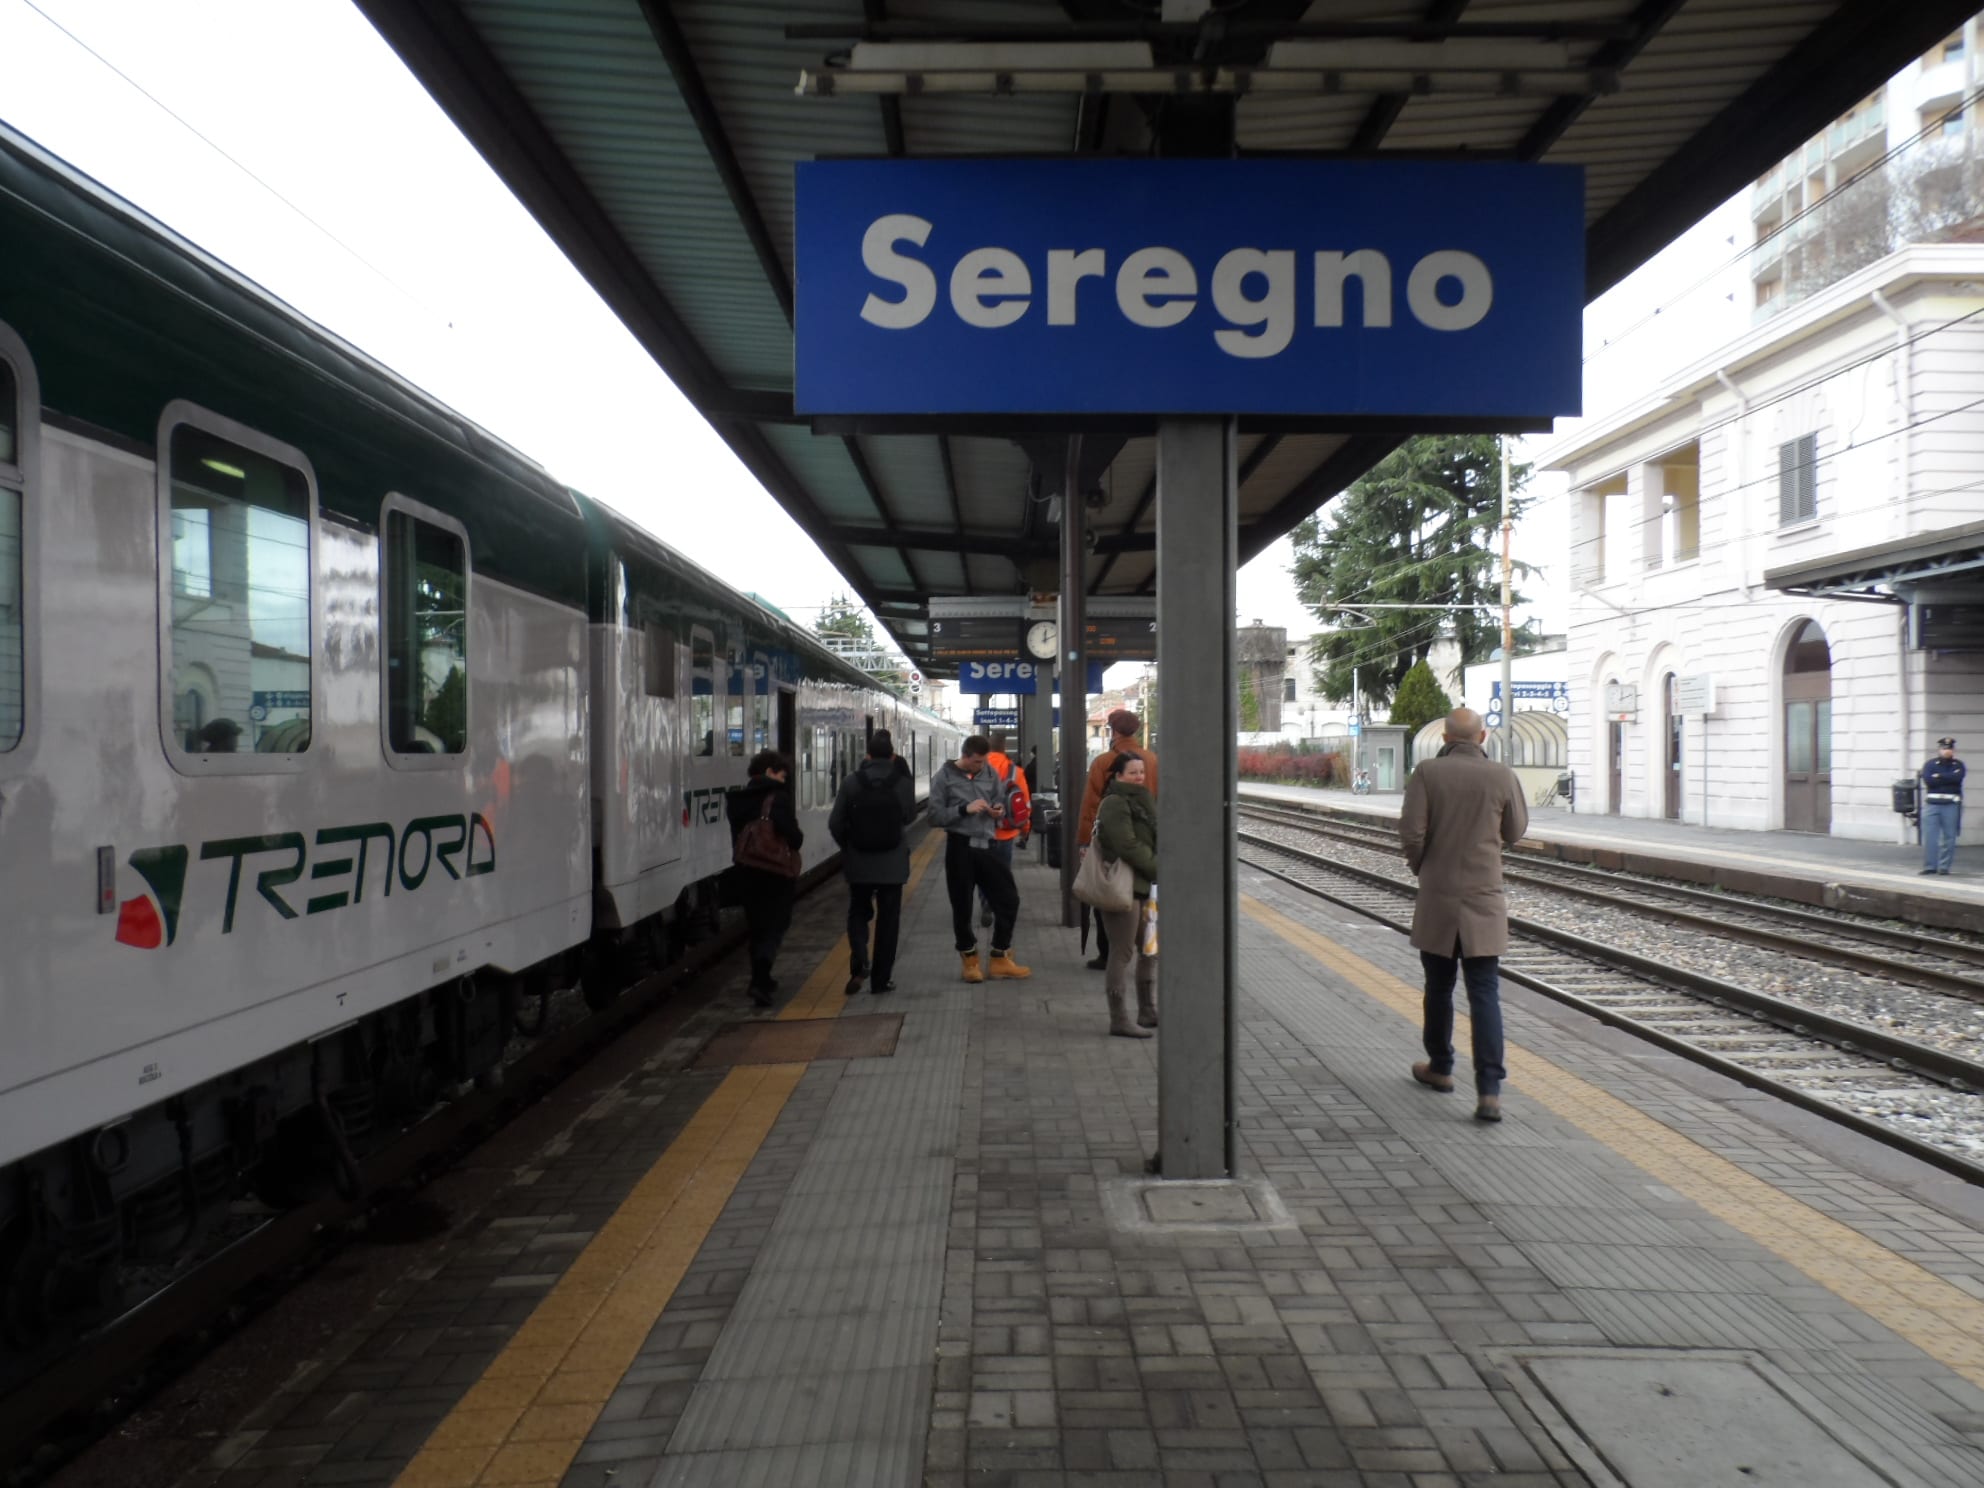 Ferrovia Saronno-Seregno, arrivano 6.2 milioni di euro per migliorarla